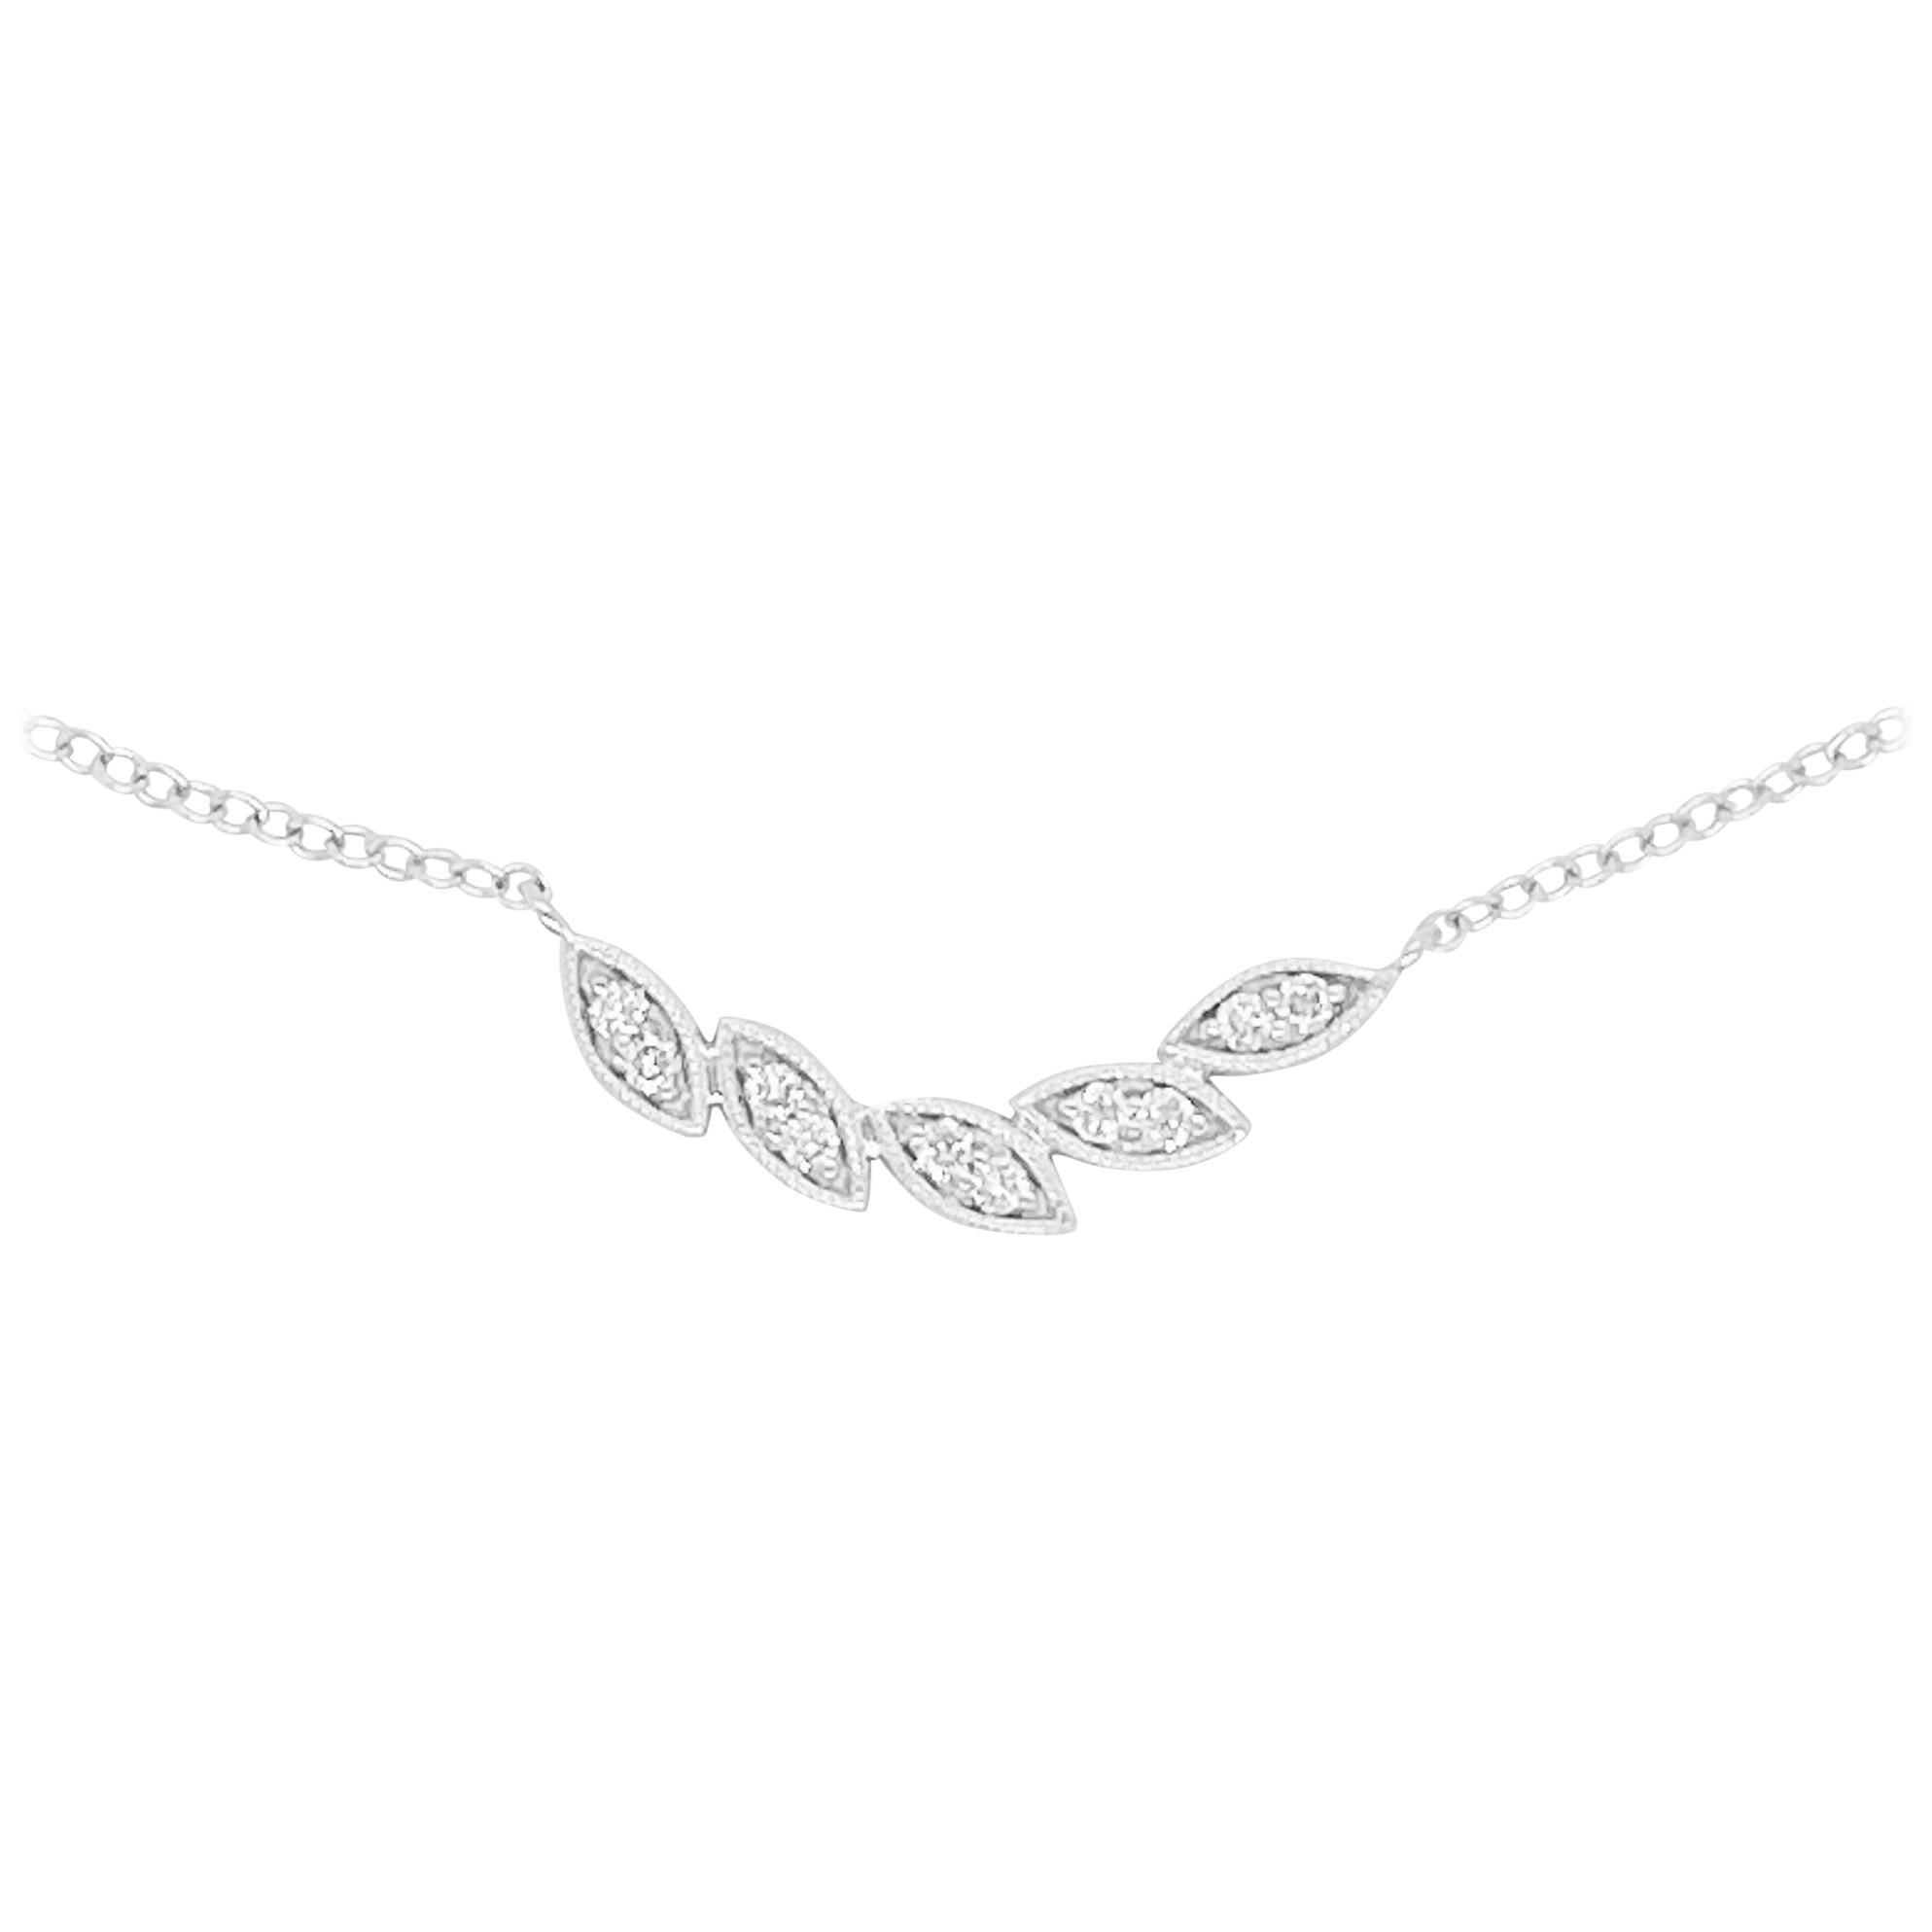 Diamond Leaf Necklace, 14 Karat White Gold, Leaf Curved Bar Necklace, #NeckMess For Sale